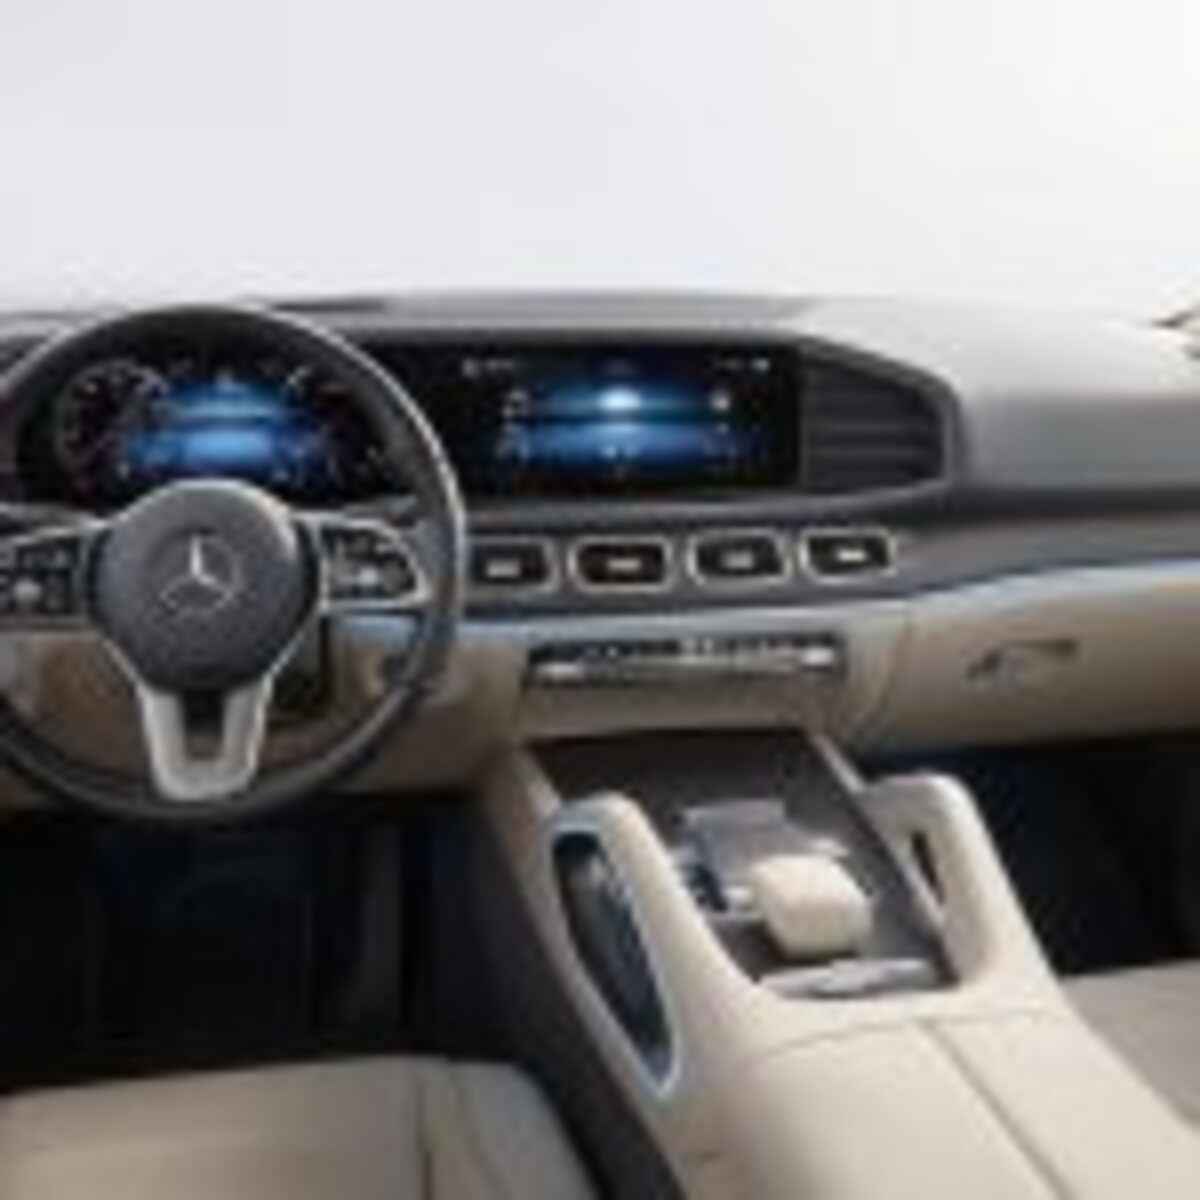 Der neue Mercedes-Benz GLS: Die S-Klasse unter den SUVThe new Mercedes-Benz GLS: The S-Class of SUVs